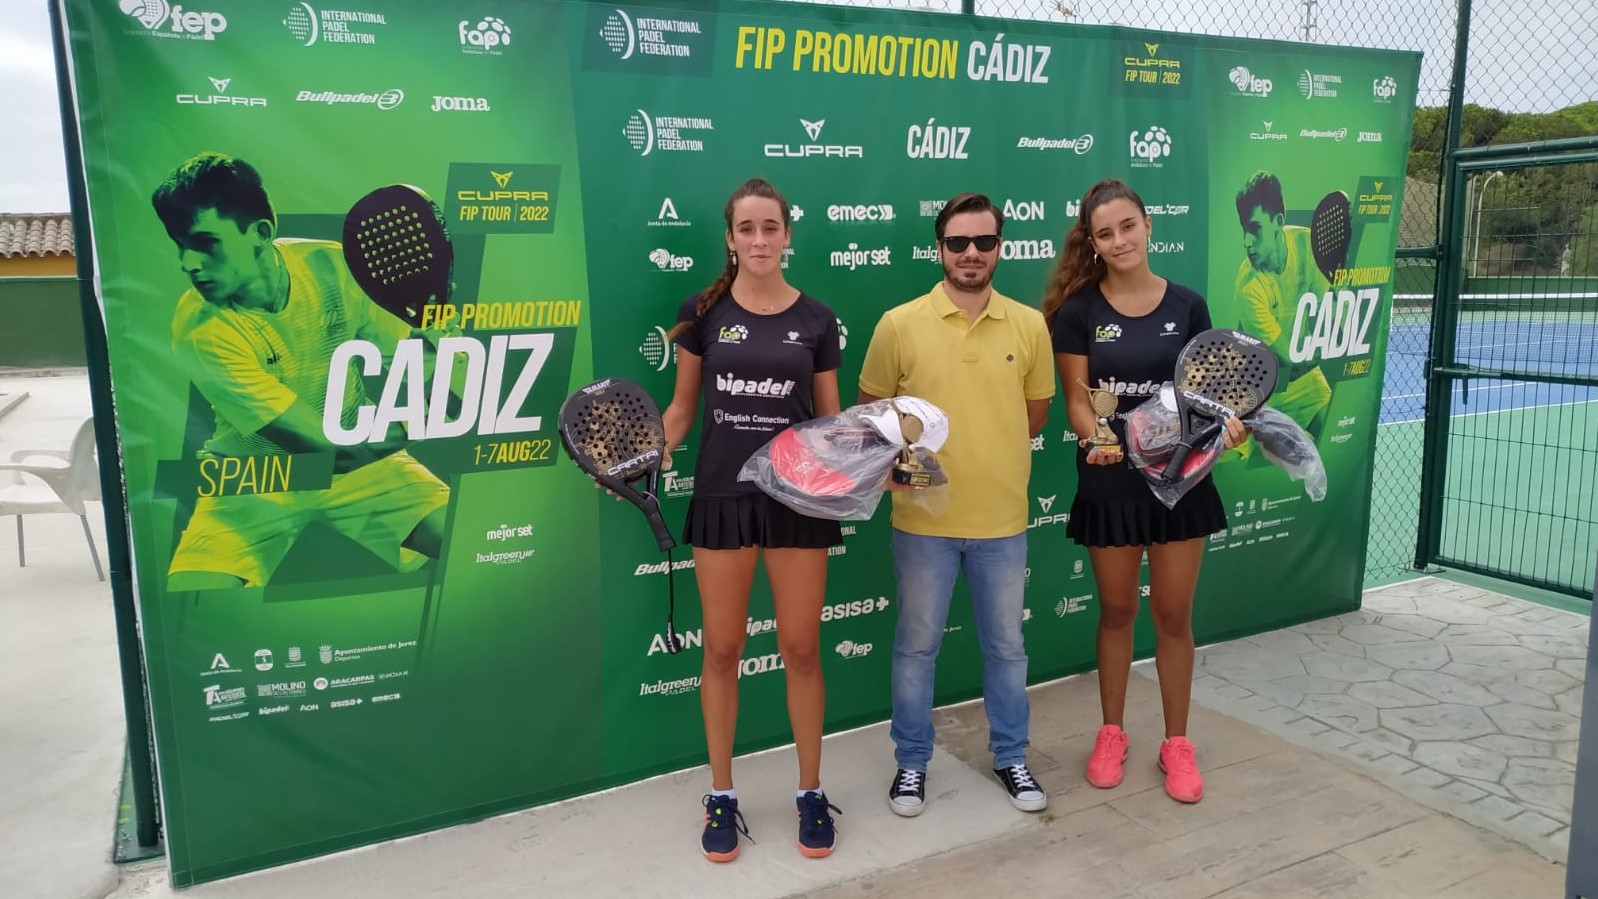 Promoção FIP Cádiz Rodriguez gêmeos 2022